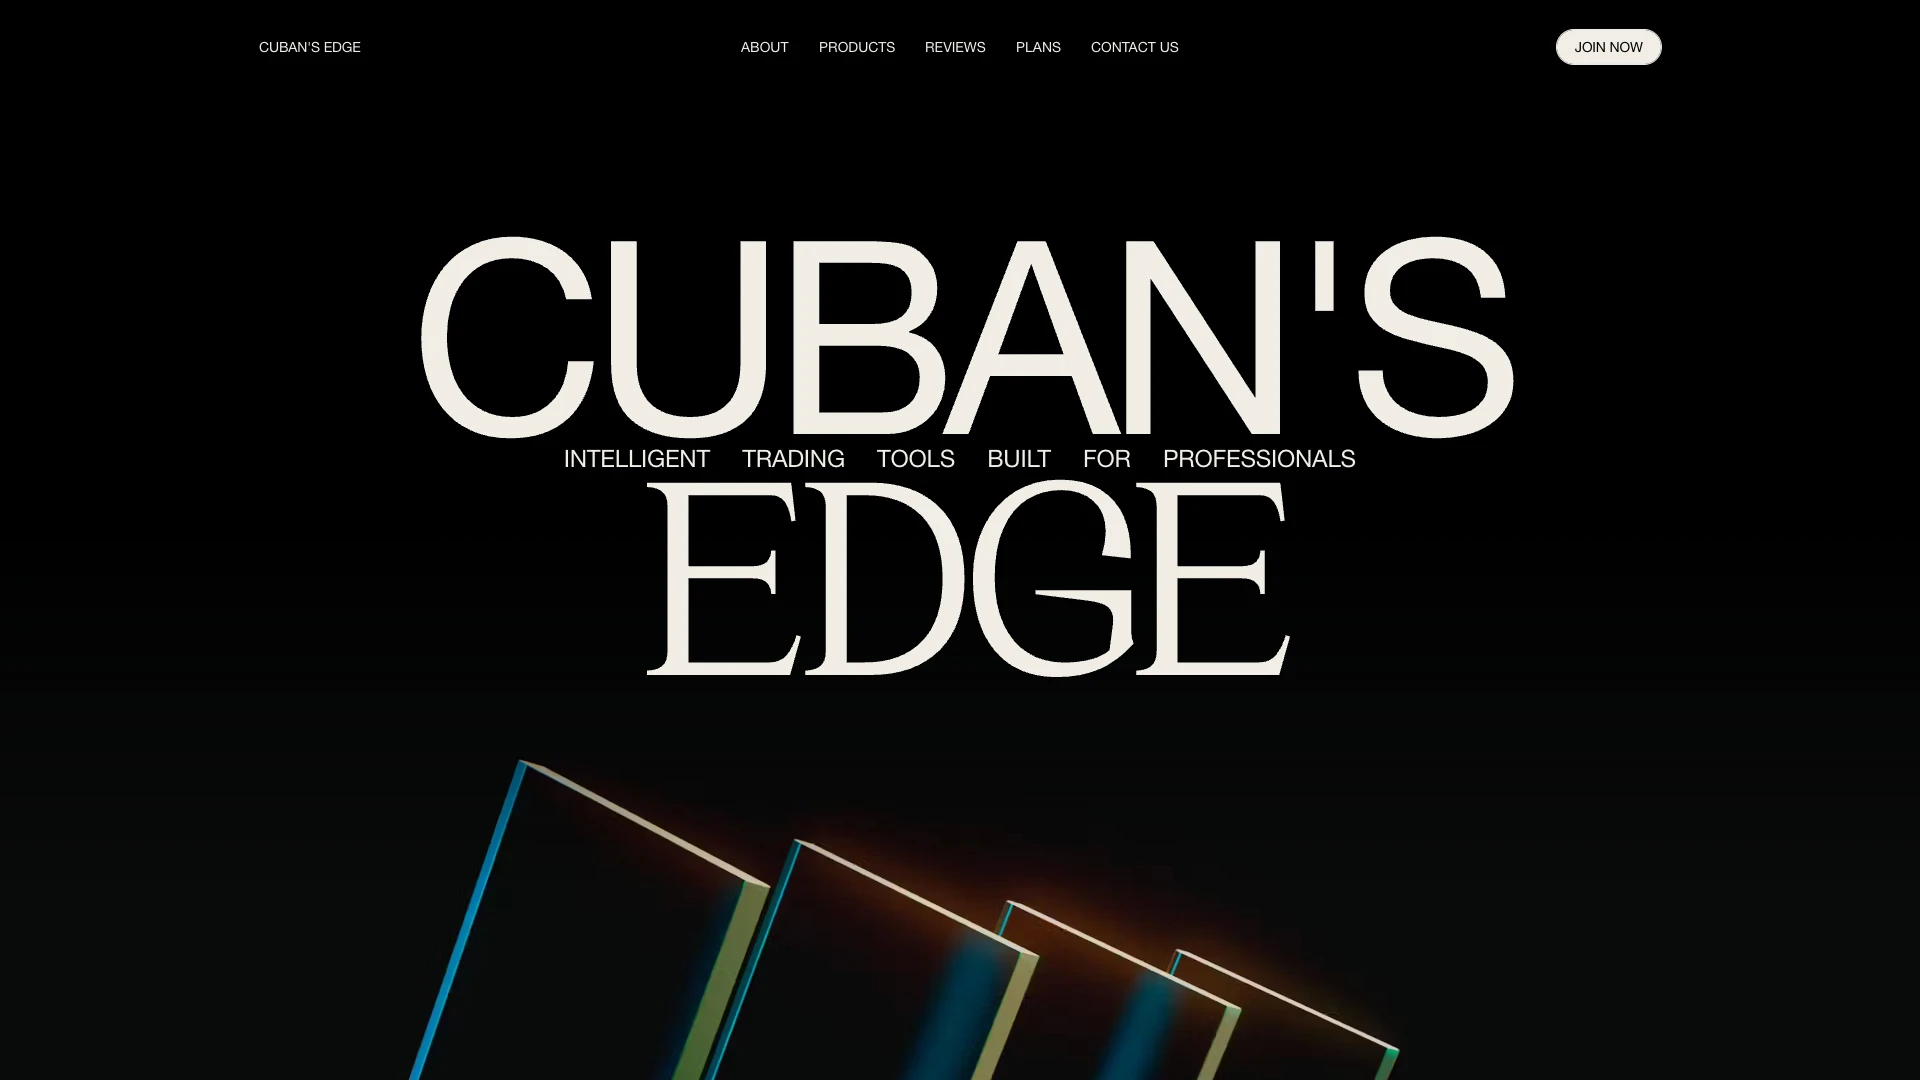 Cuban's Edge